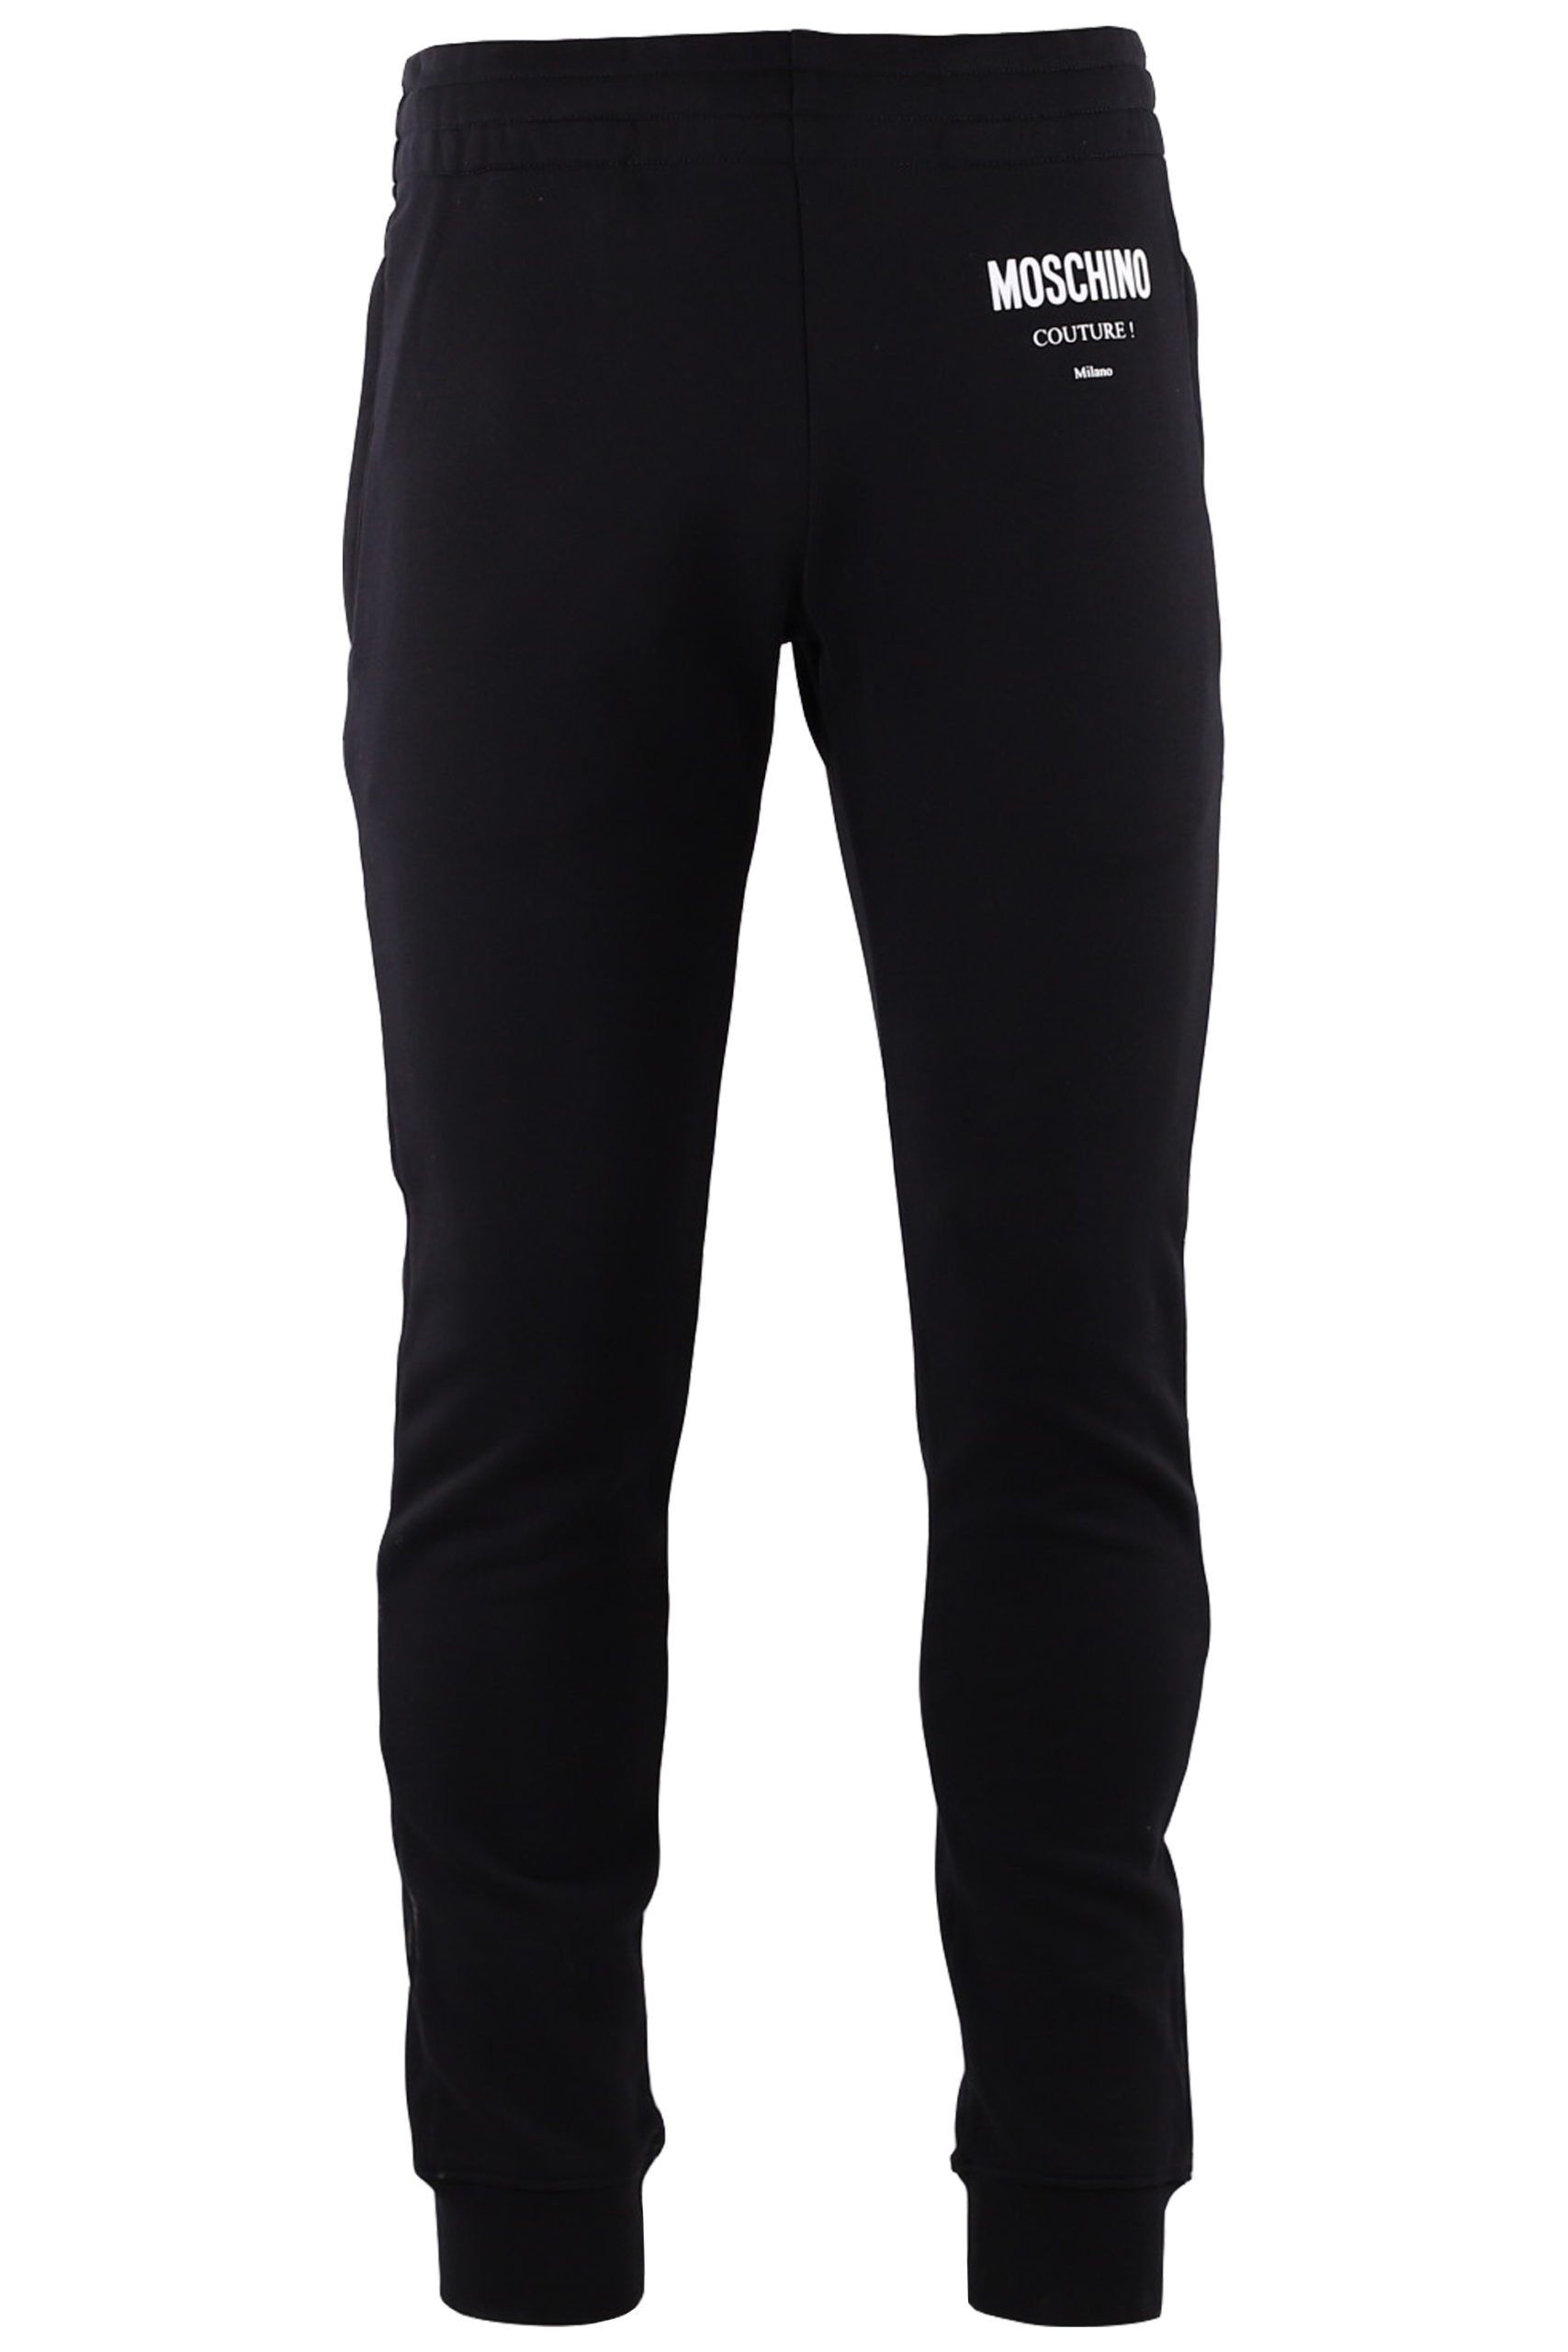 Moschino - Pantalón de chándal negro con logo grande blanco - BLS Fashion